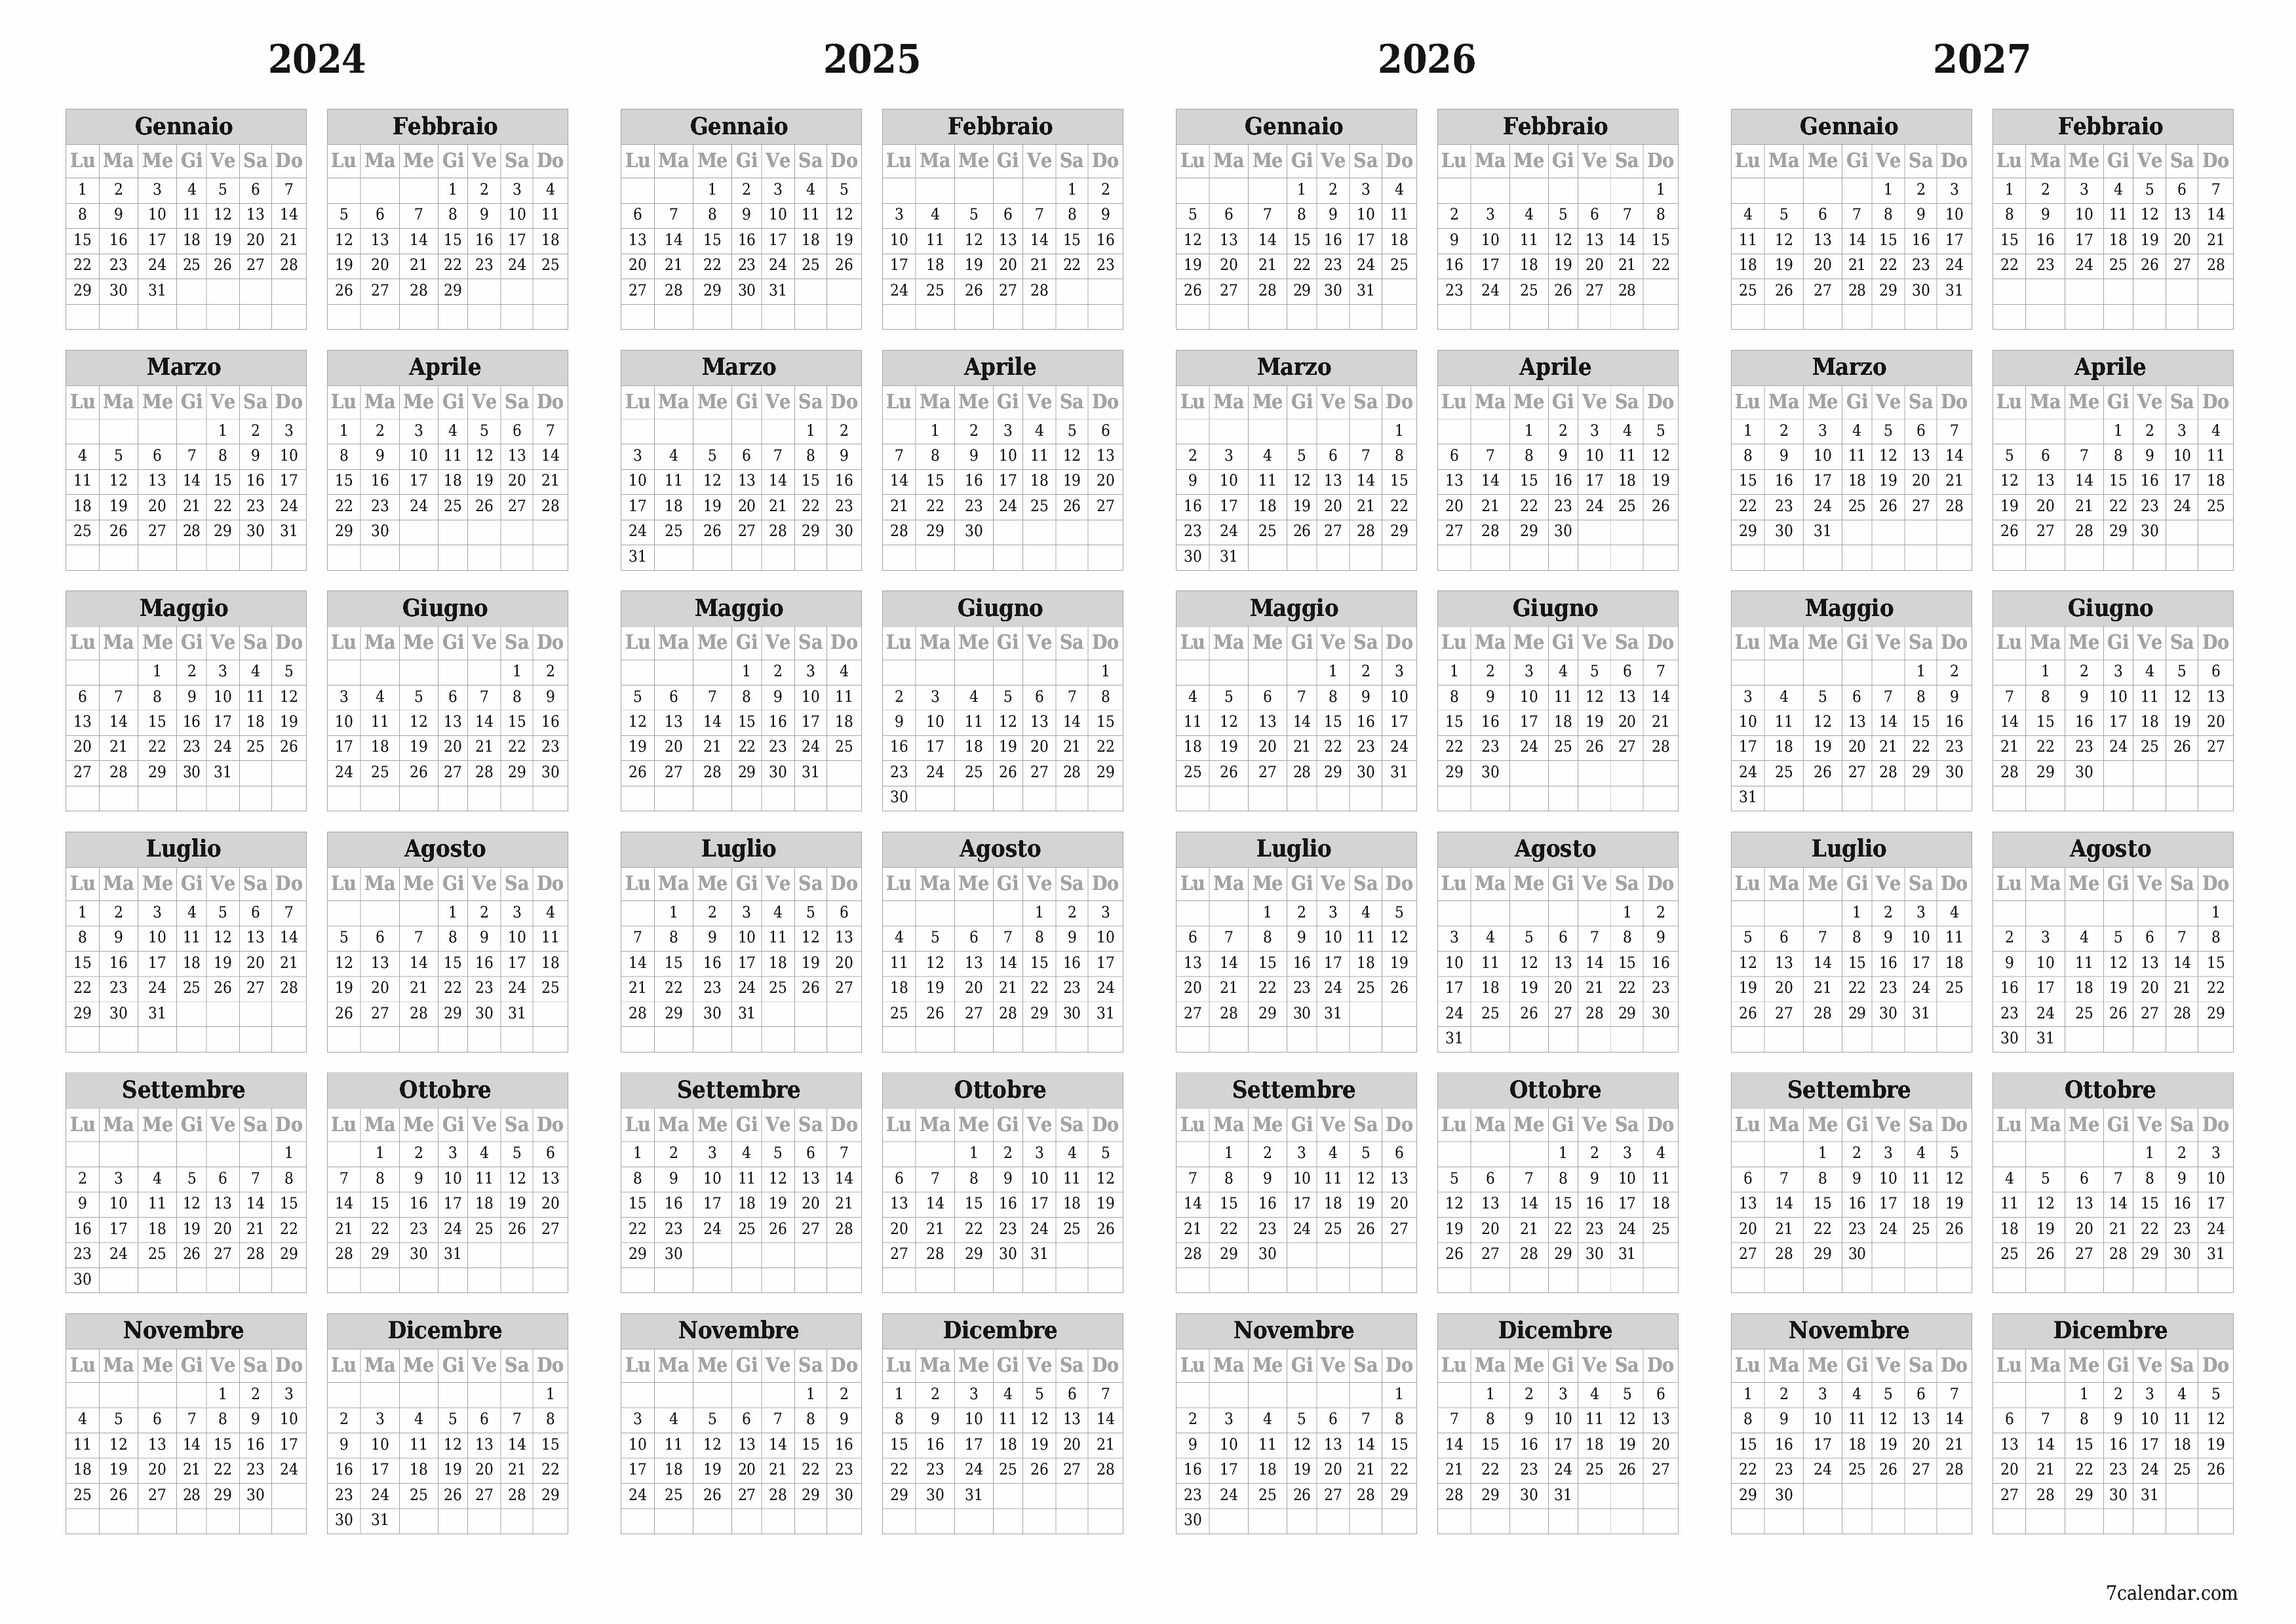  stampabile da parete modello di gratuitoorizzontale Annuale calendario Dicembre (Dic) 2024